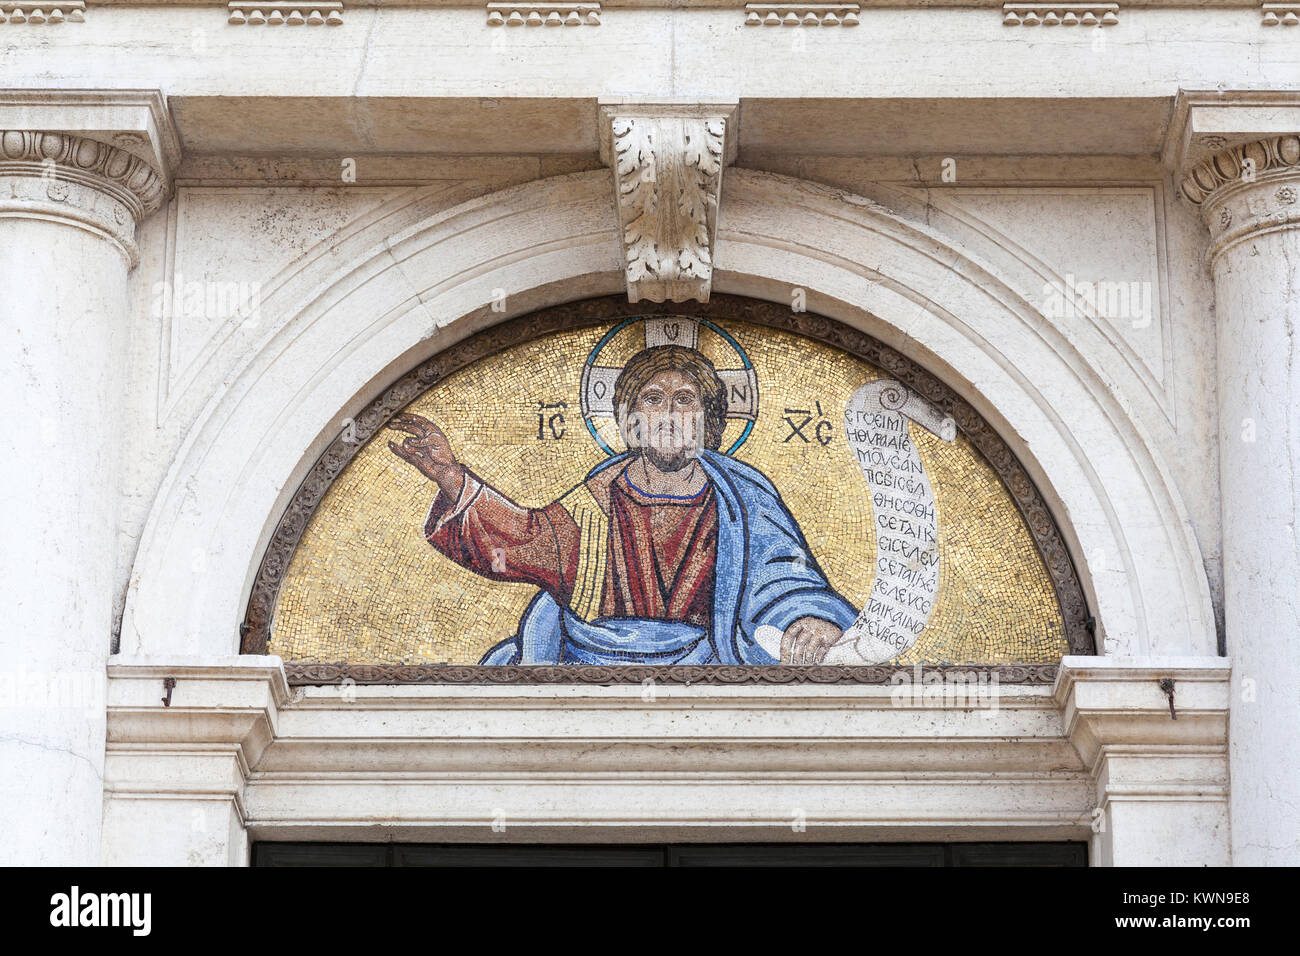 Détail de la mosaïque religieuse sur l'entrée de l'église San Giorgio dei Greci, Castello, Venise, Vénétie, Italie Banque D'Images